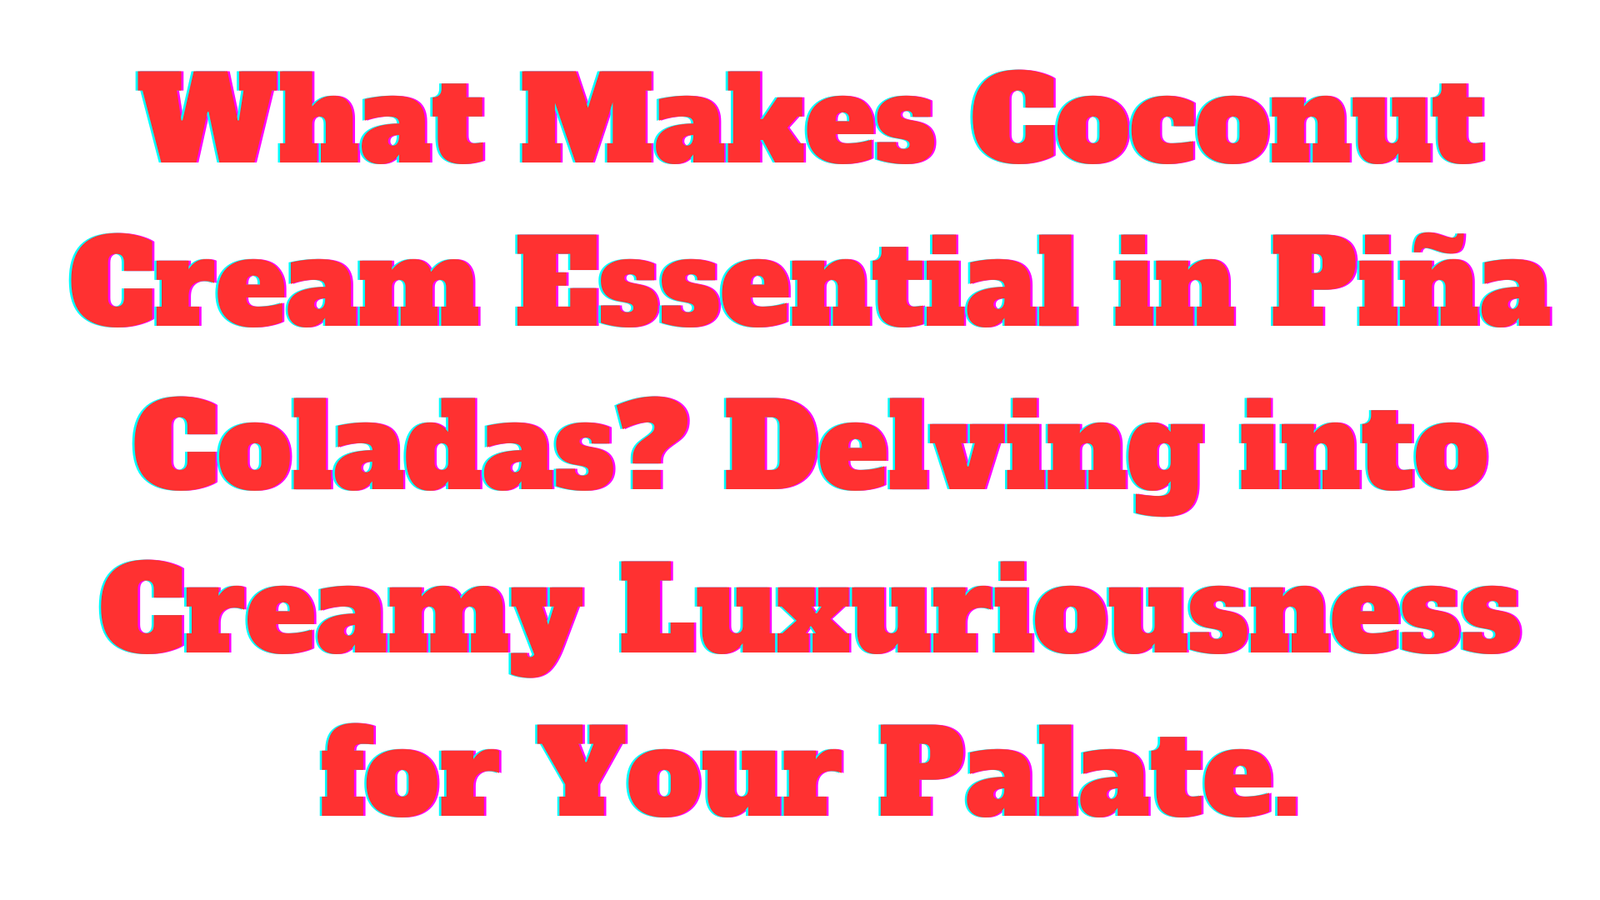 What Makes Coconut Cream Essential in Piña Coladas?